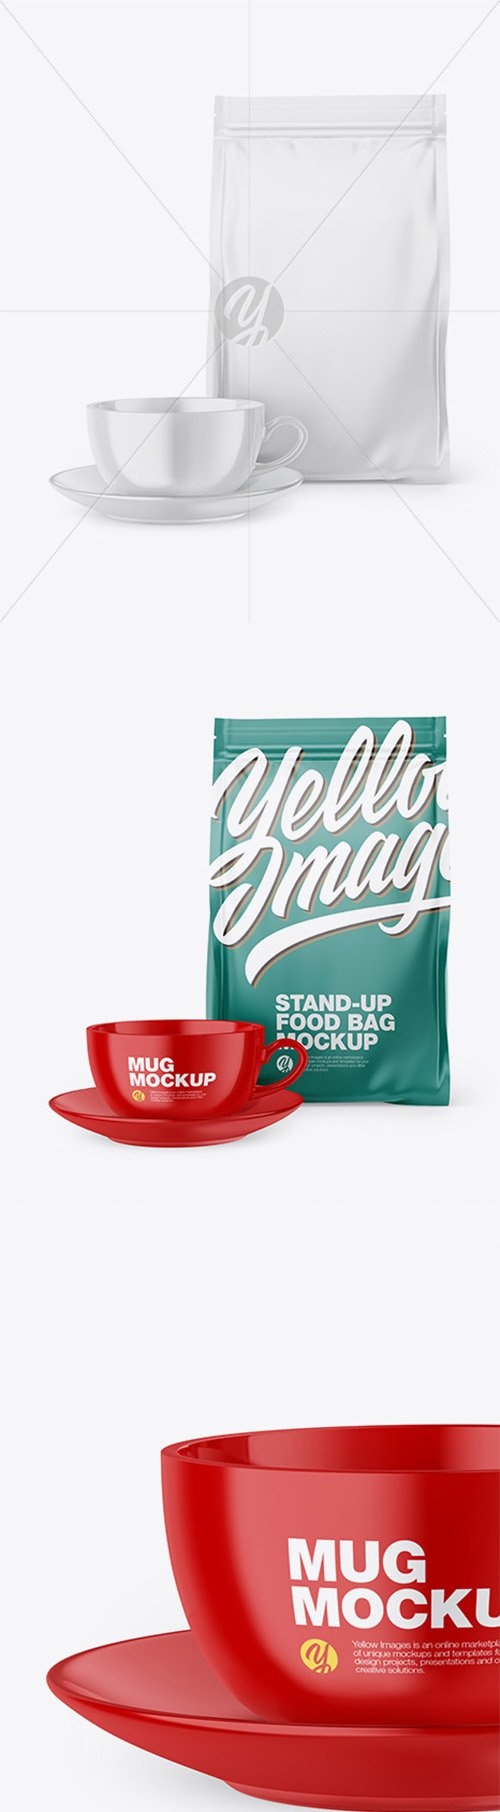 Matte Stand-Up Bag with Coffee Mug Mockup 66582